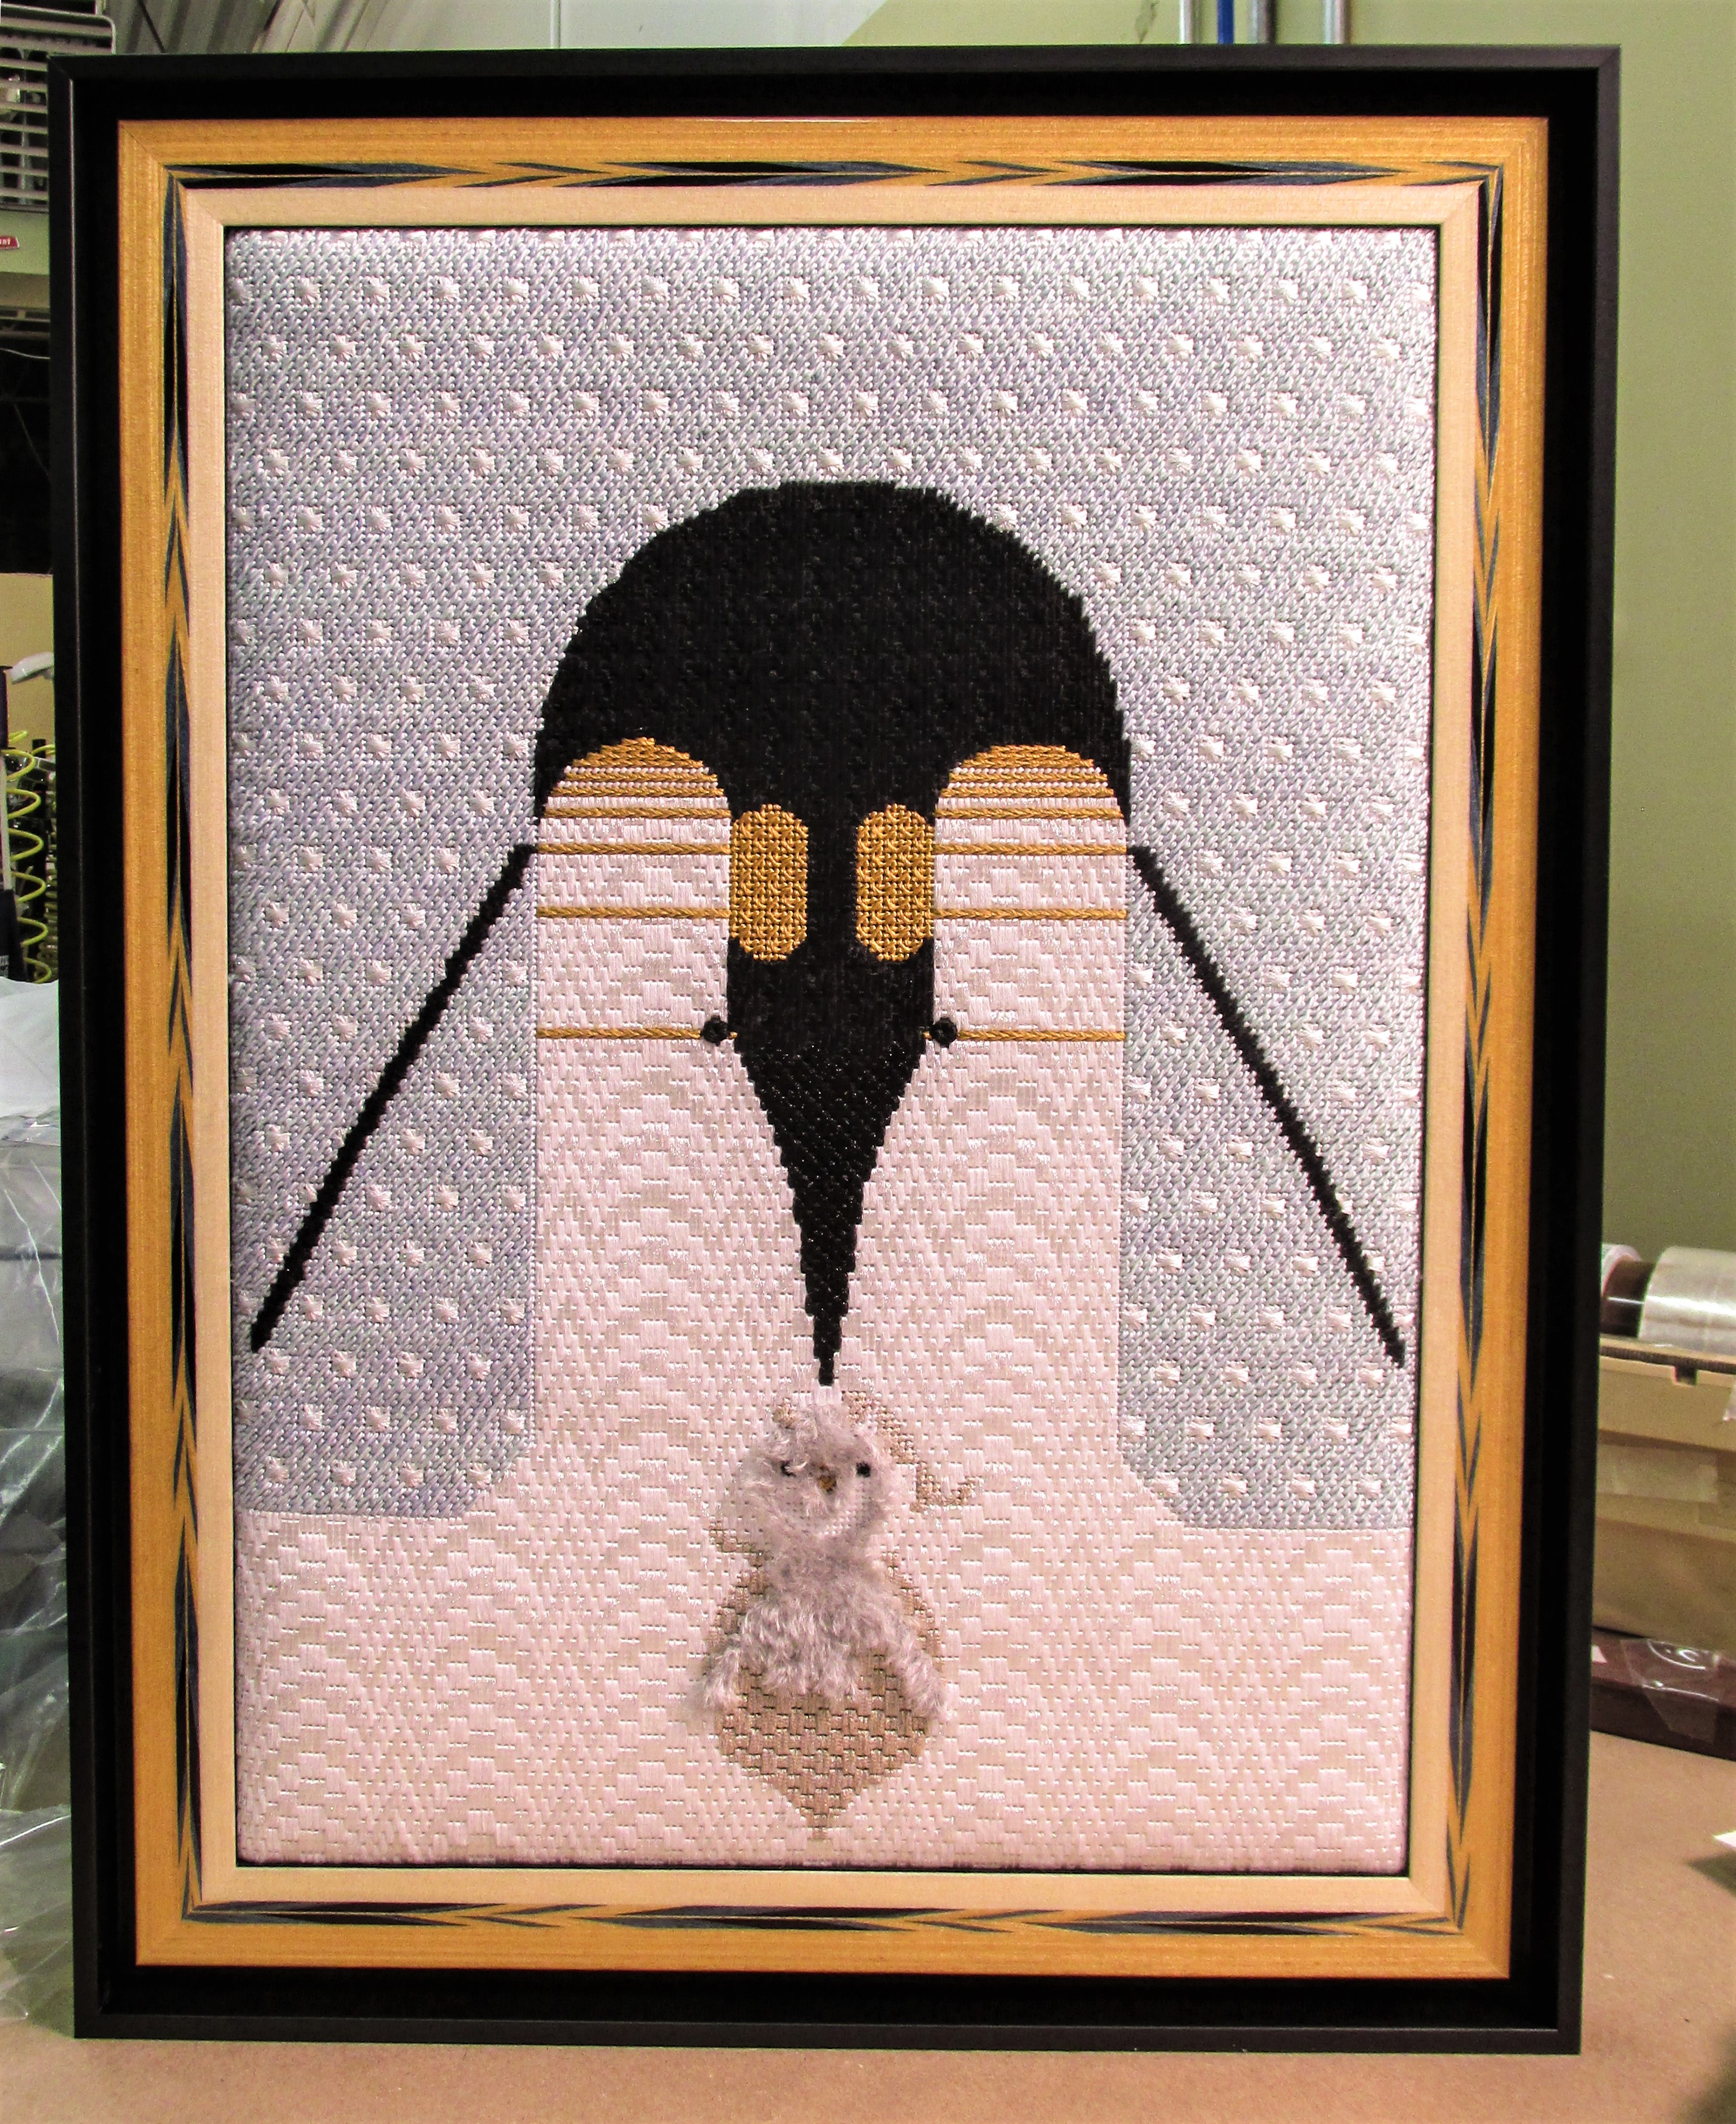 Framed needlepoint of two Penguins